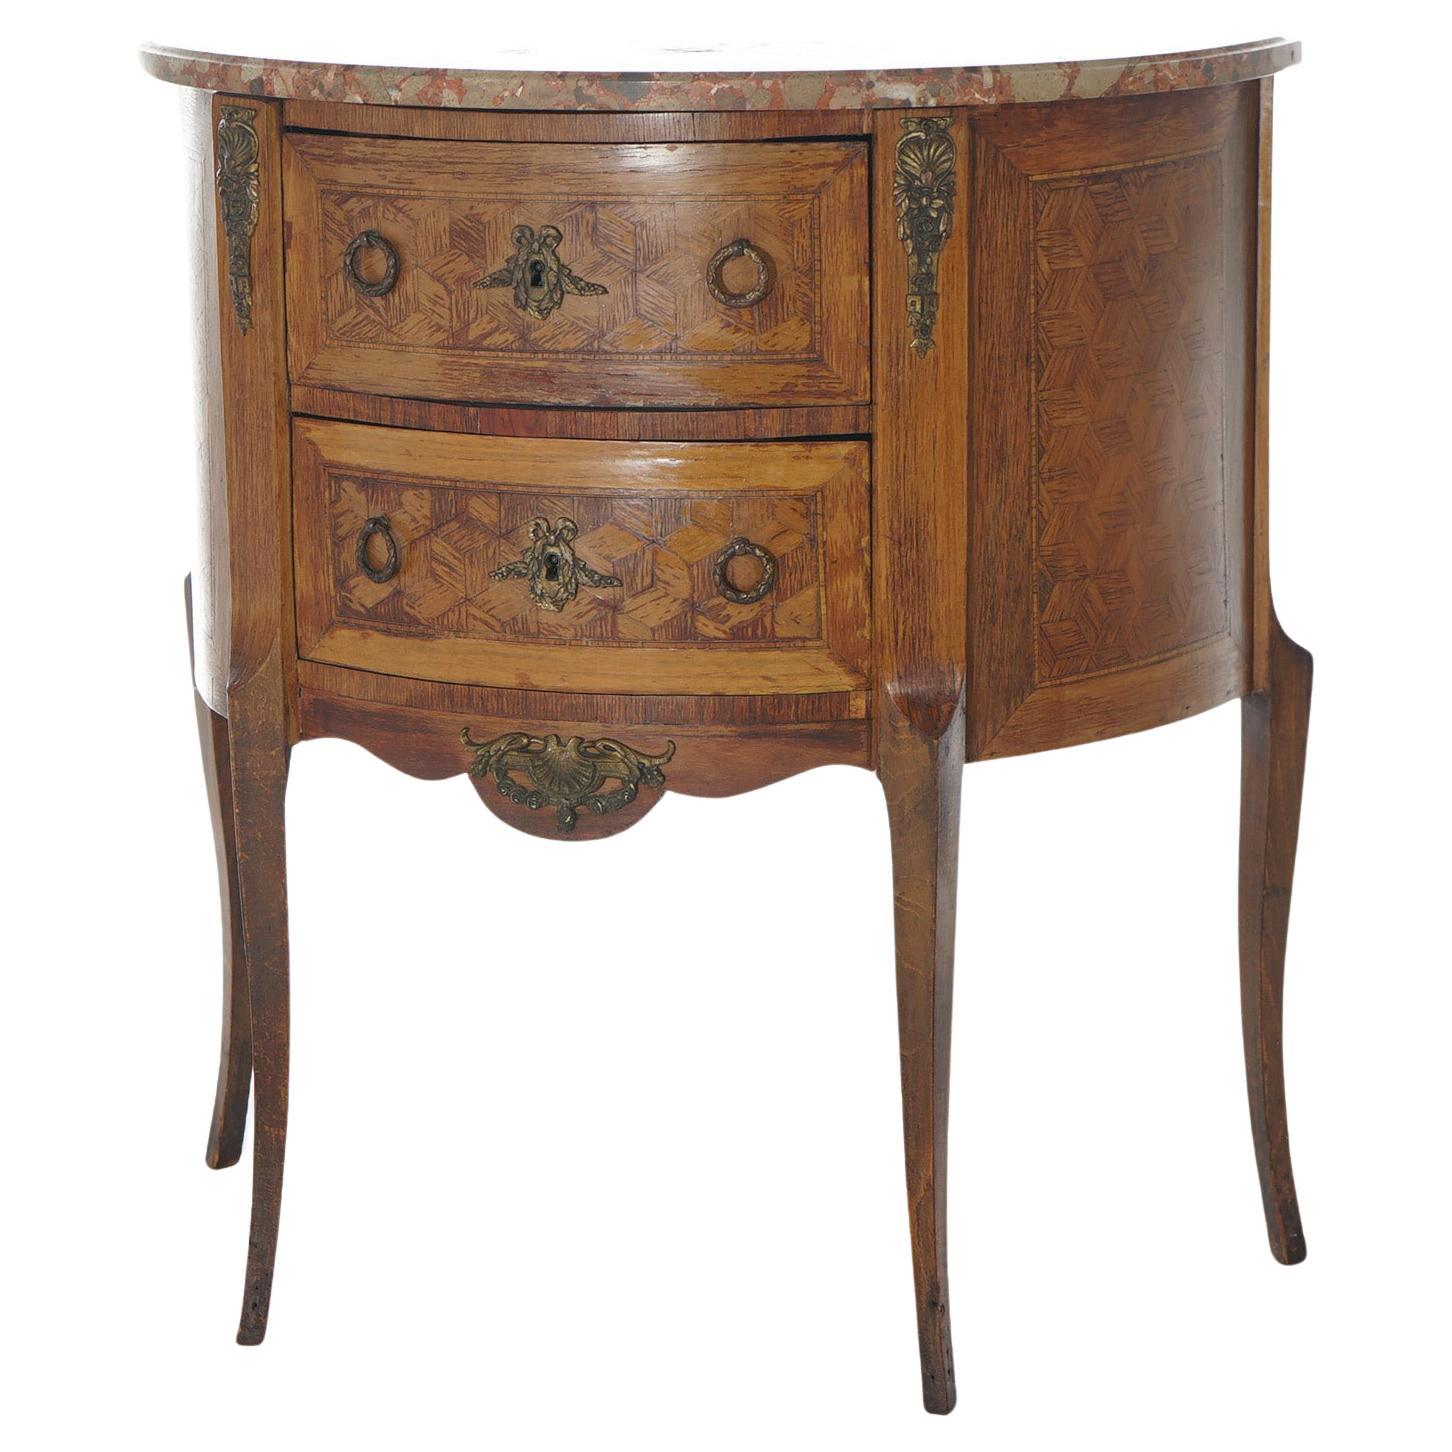 AntiqueFrench Demilune Kingwood, Satinwood & Spécimen Marble Side Table c1920 For Sale